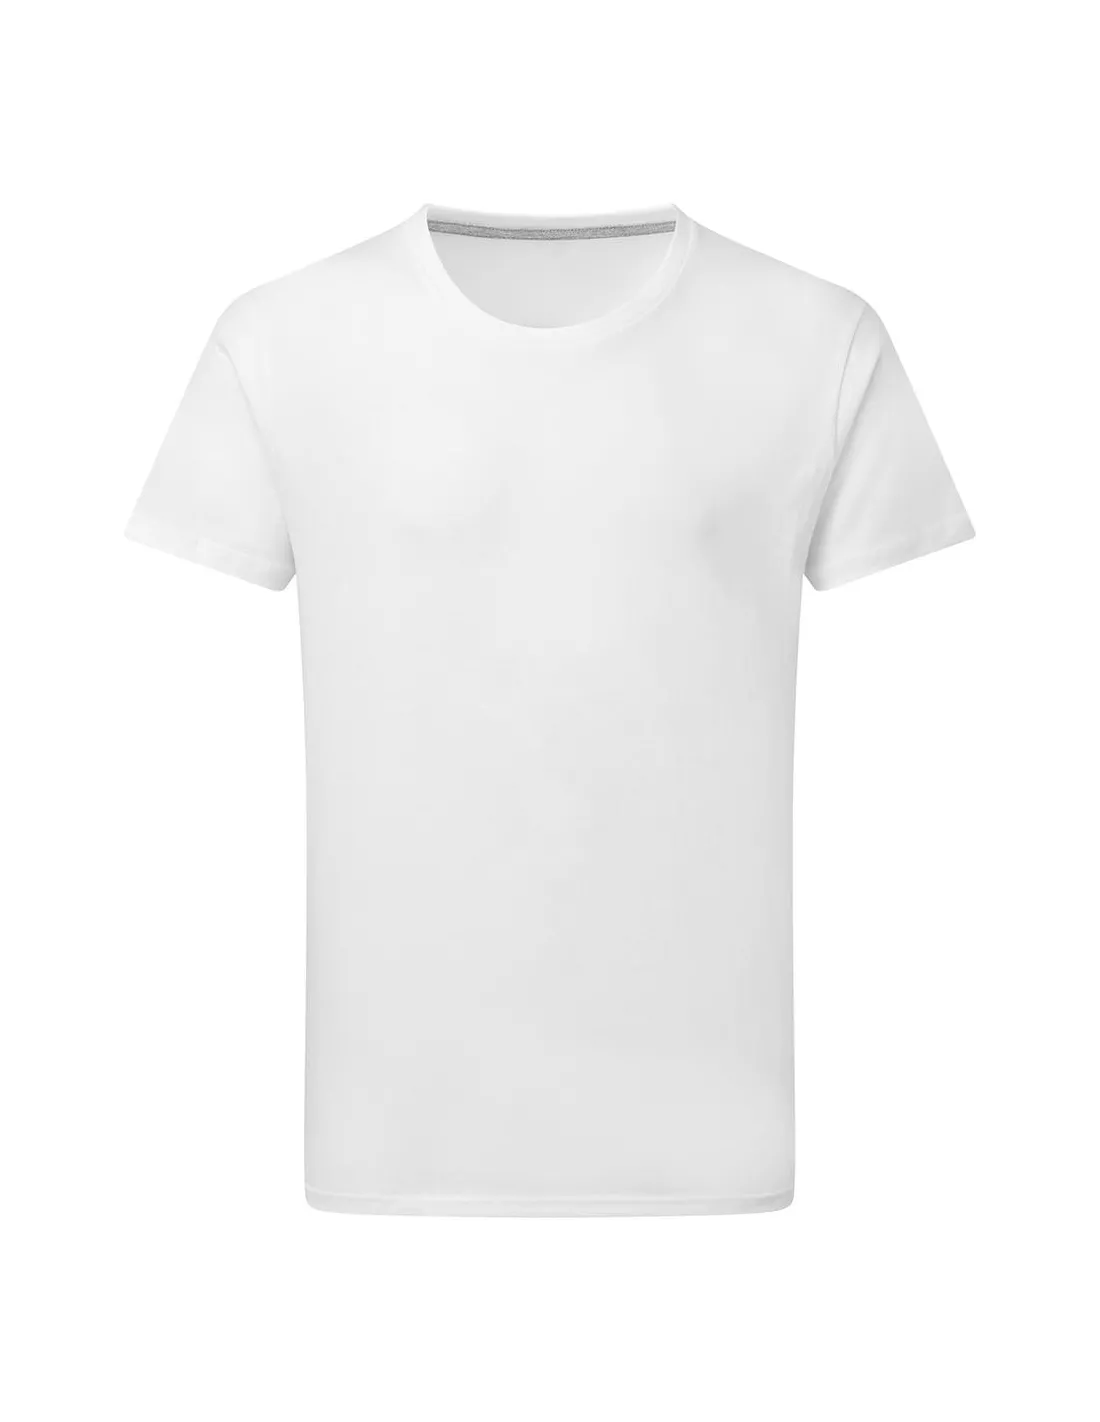 Camiseta Perfect Print sin etiqueta